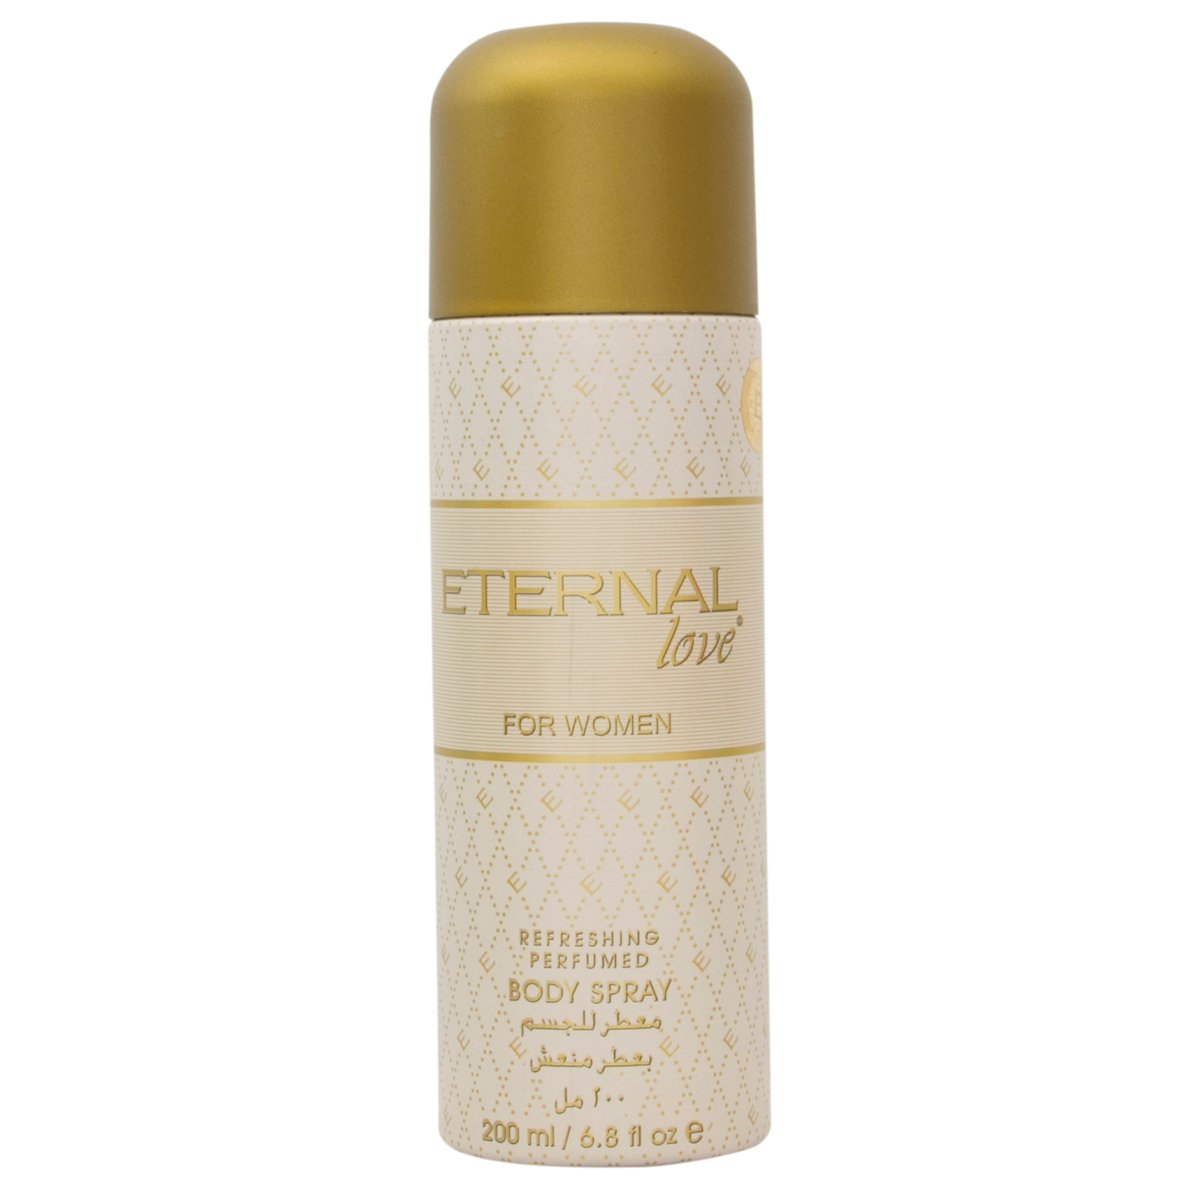 Eternal Love Refreshing Body Spray for Women, 200 ml